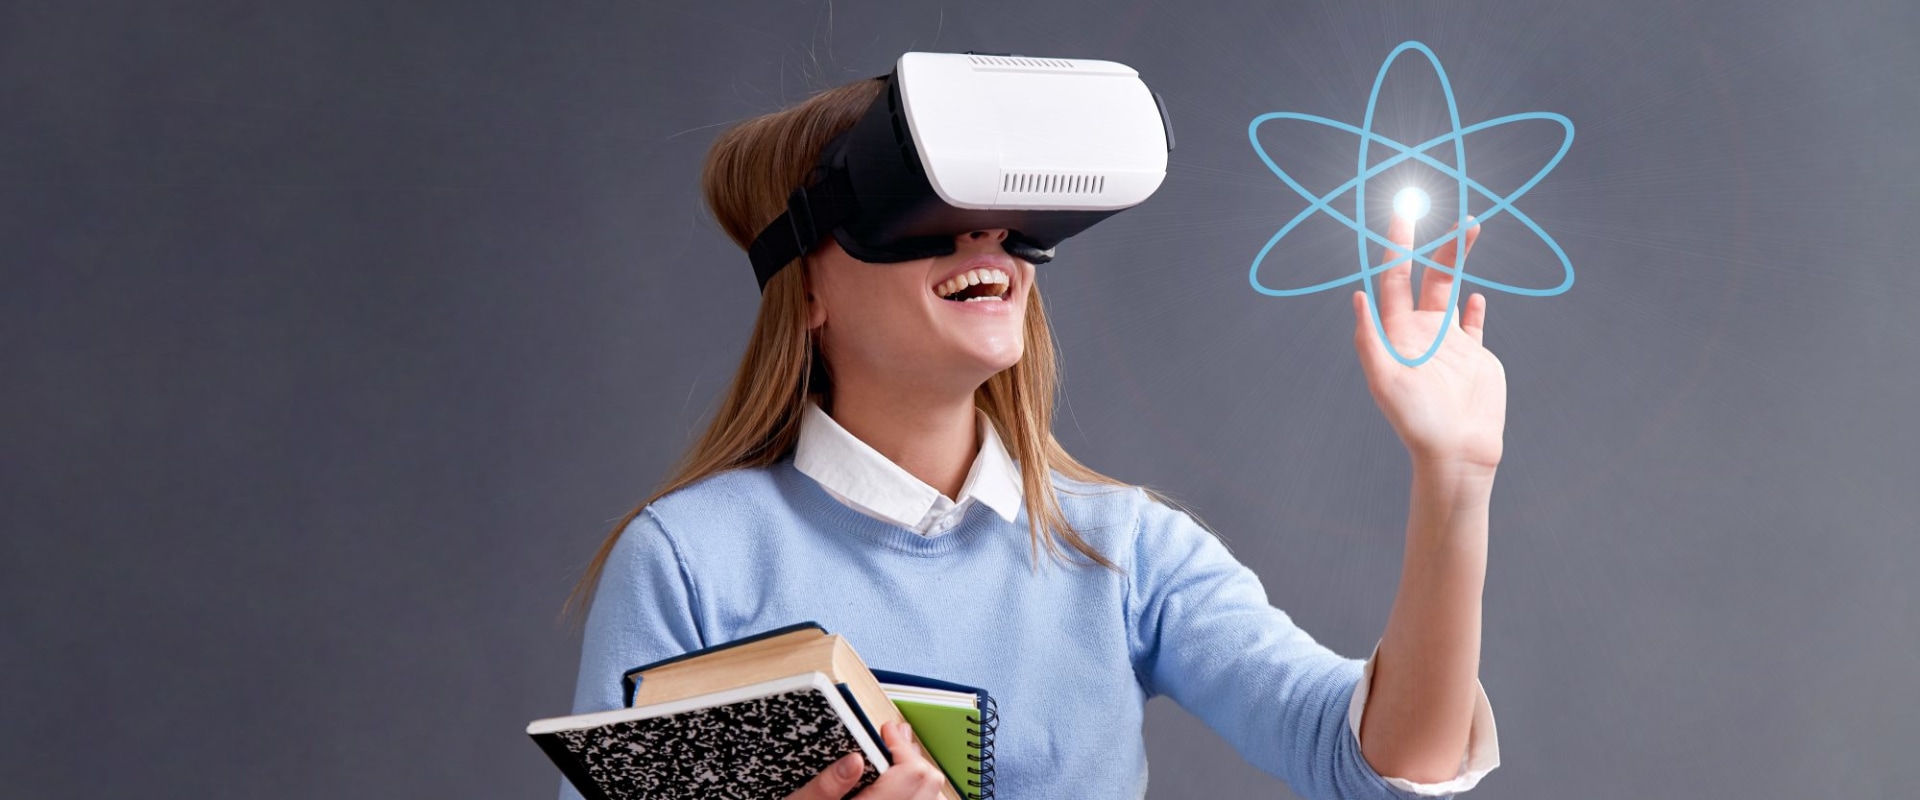 Образовательная реальность. Виртуальная реальность в образовании. Очки дополненной реальности. Очки виртуальной реальности в школе. Технологии виртуальной и дополненной реальности.